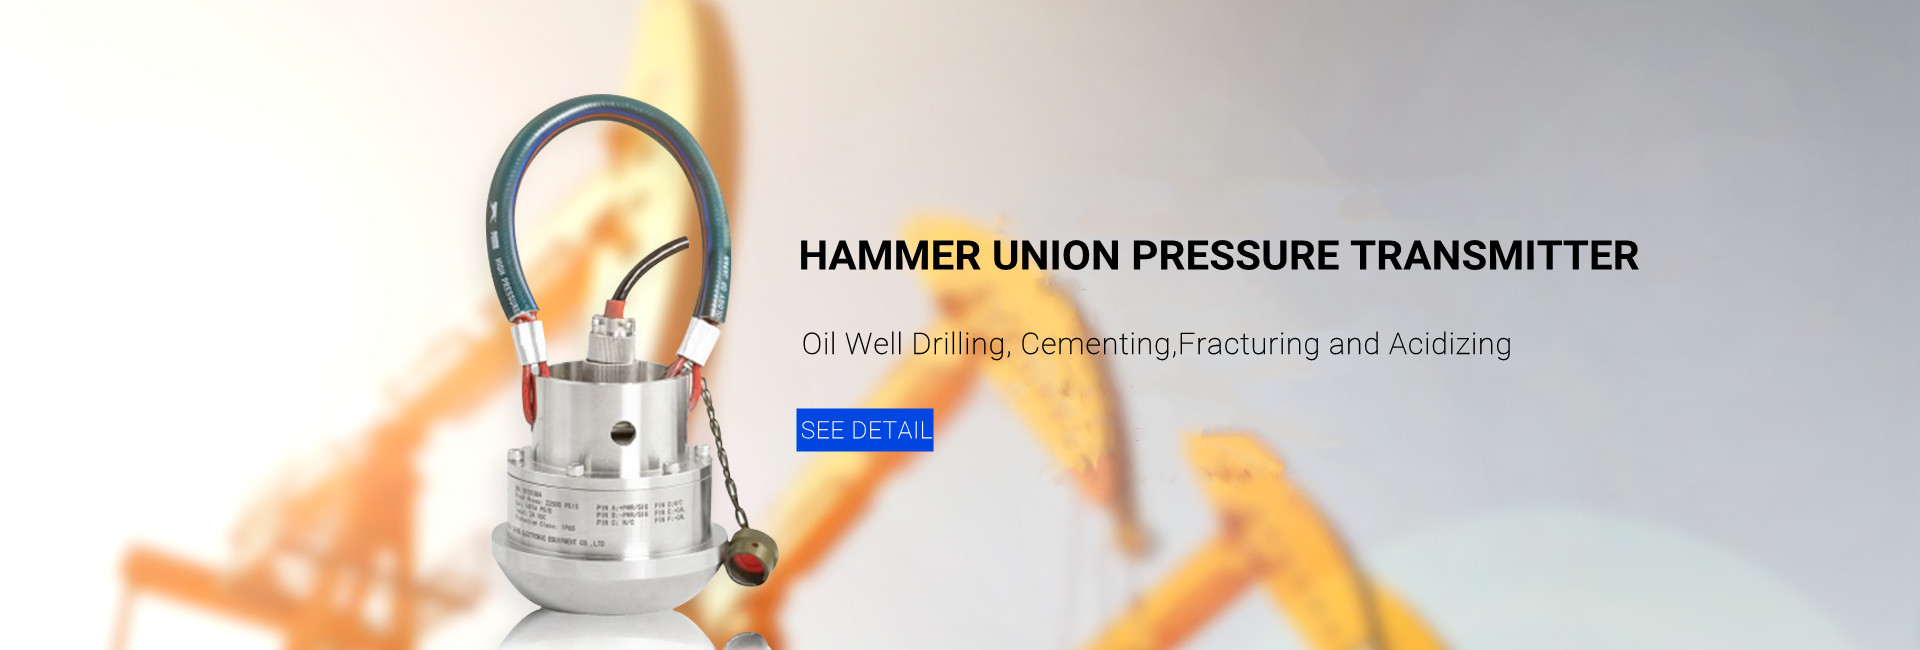 Hammer union pressure transmitter 